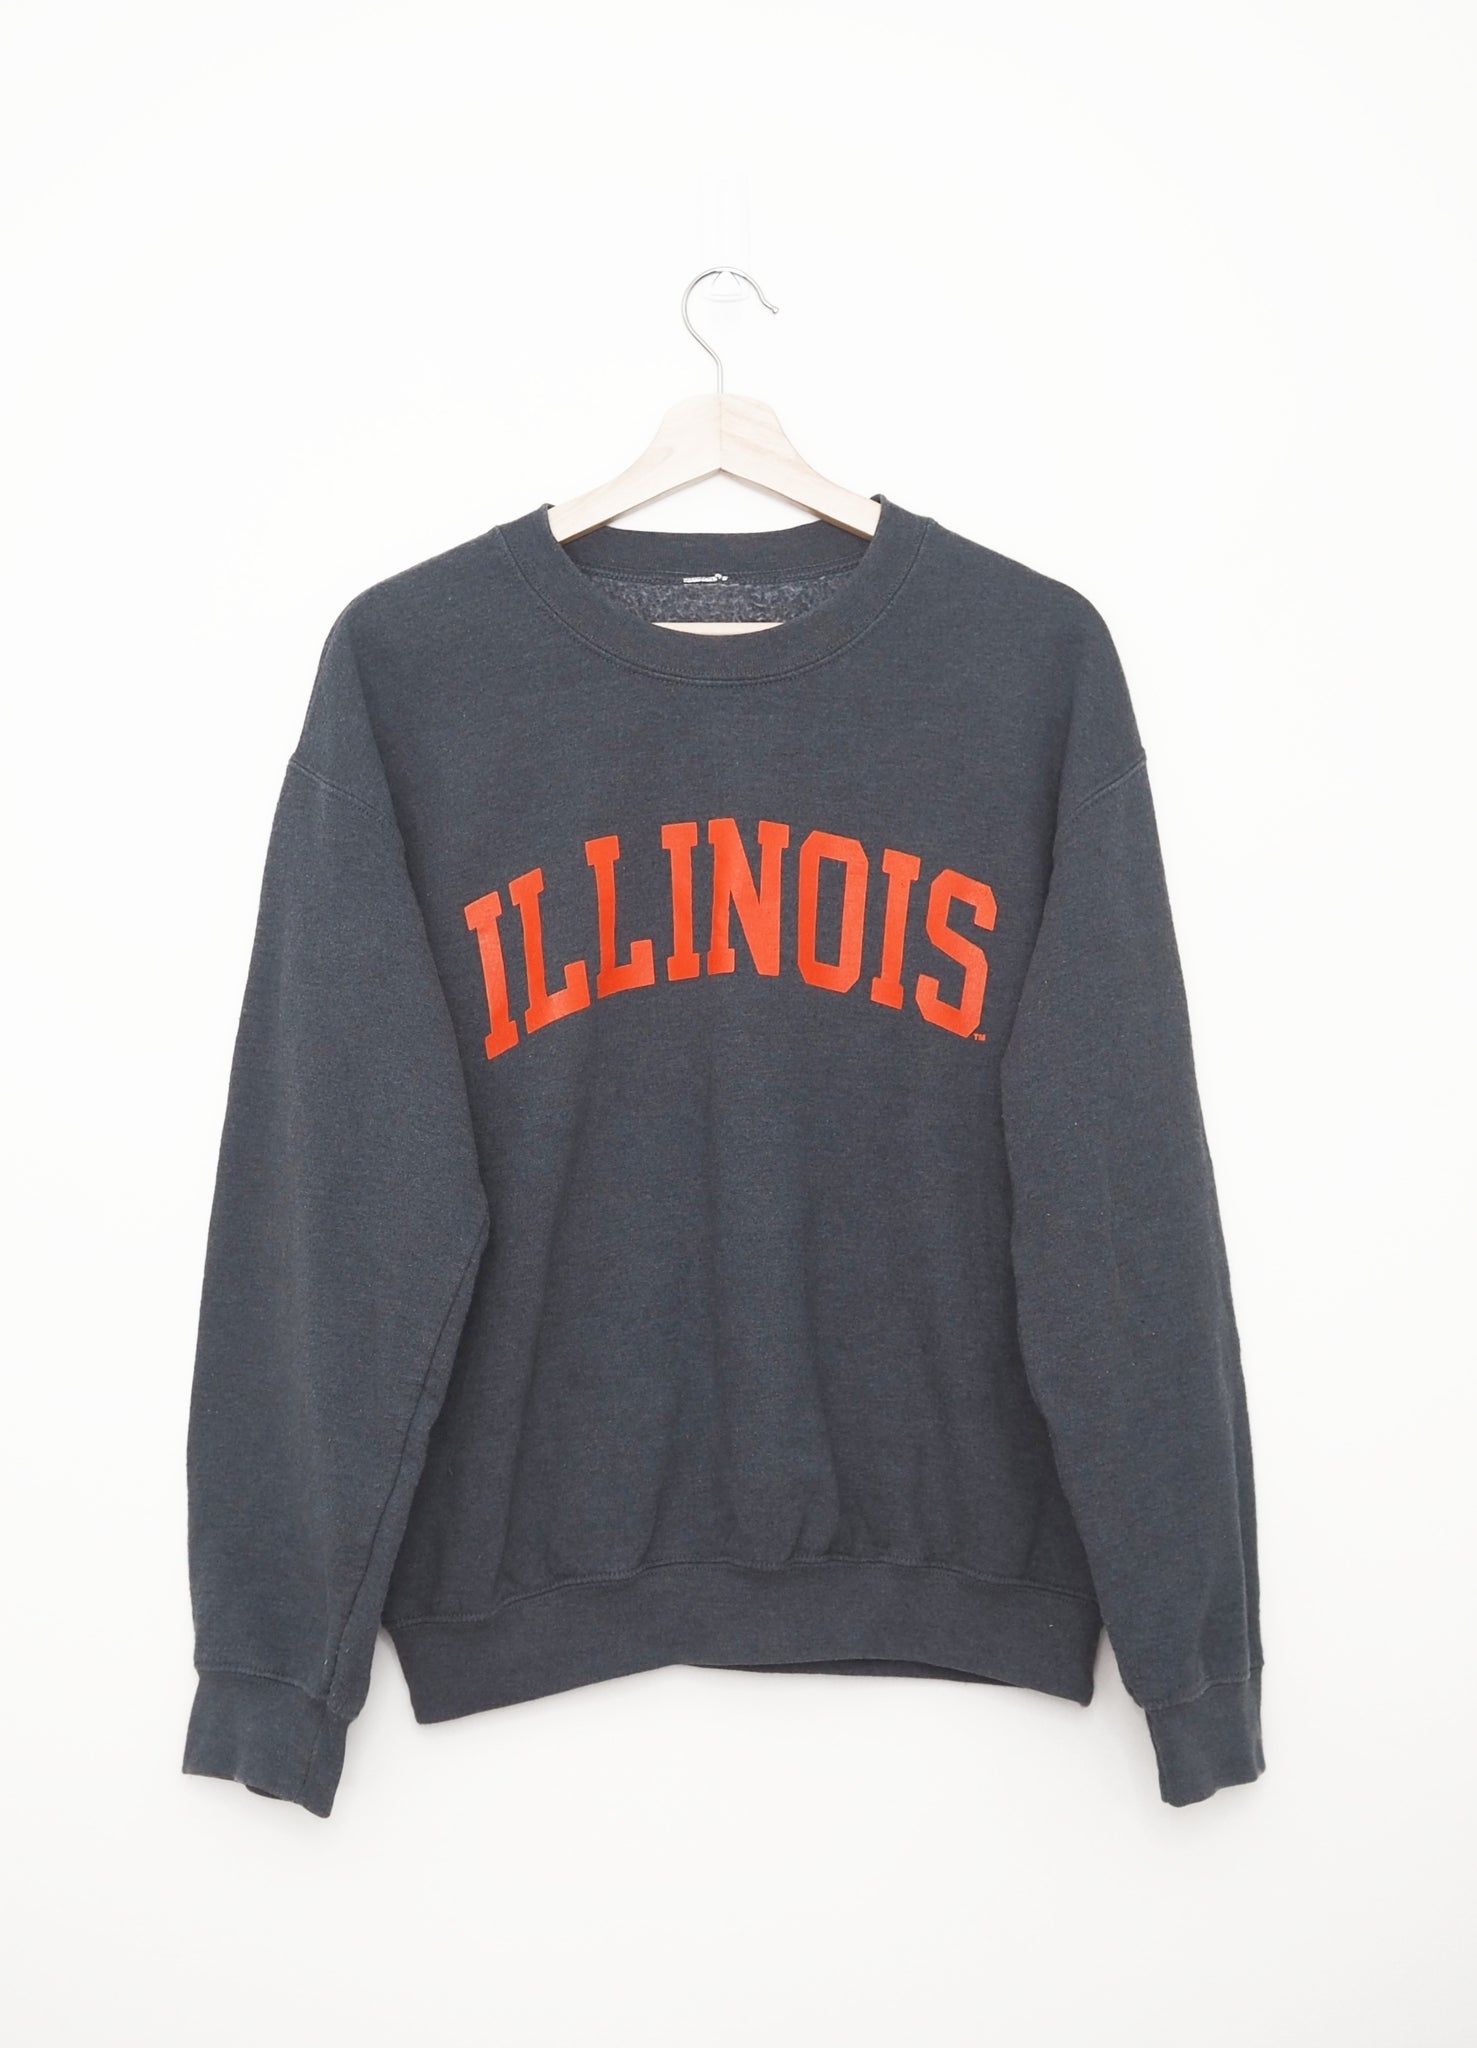 Illinois Grey Sweater